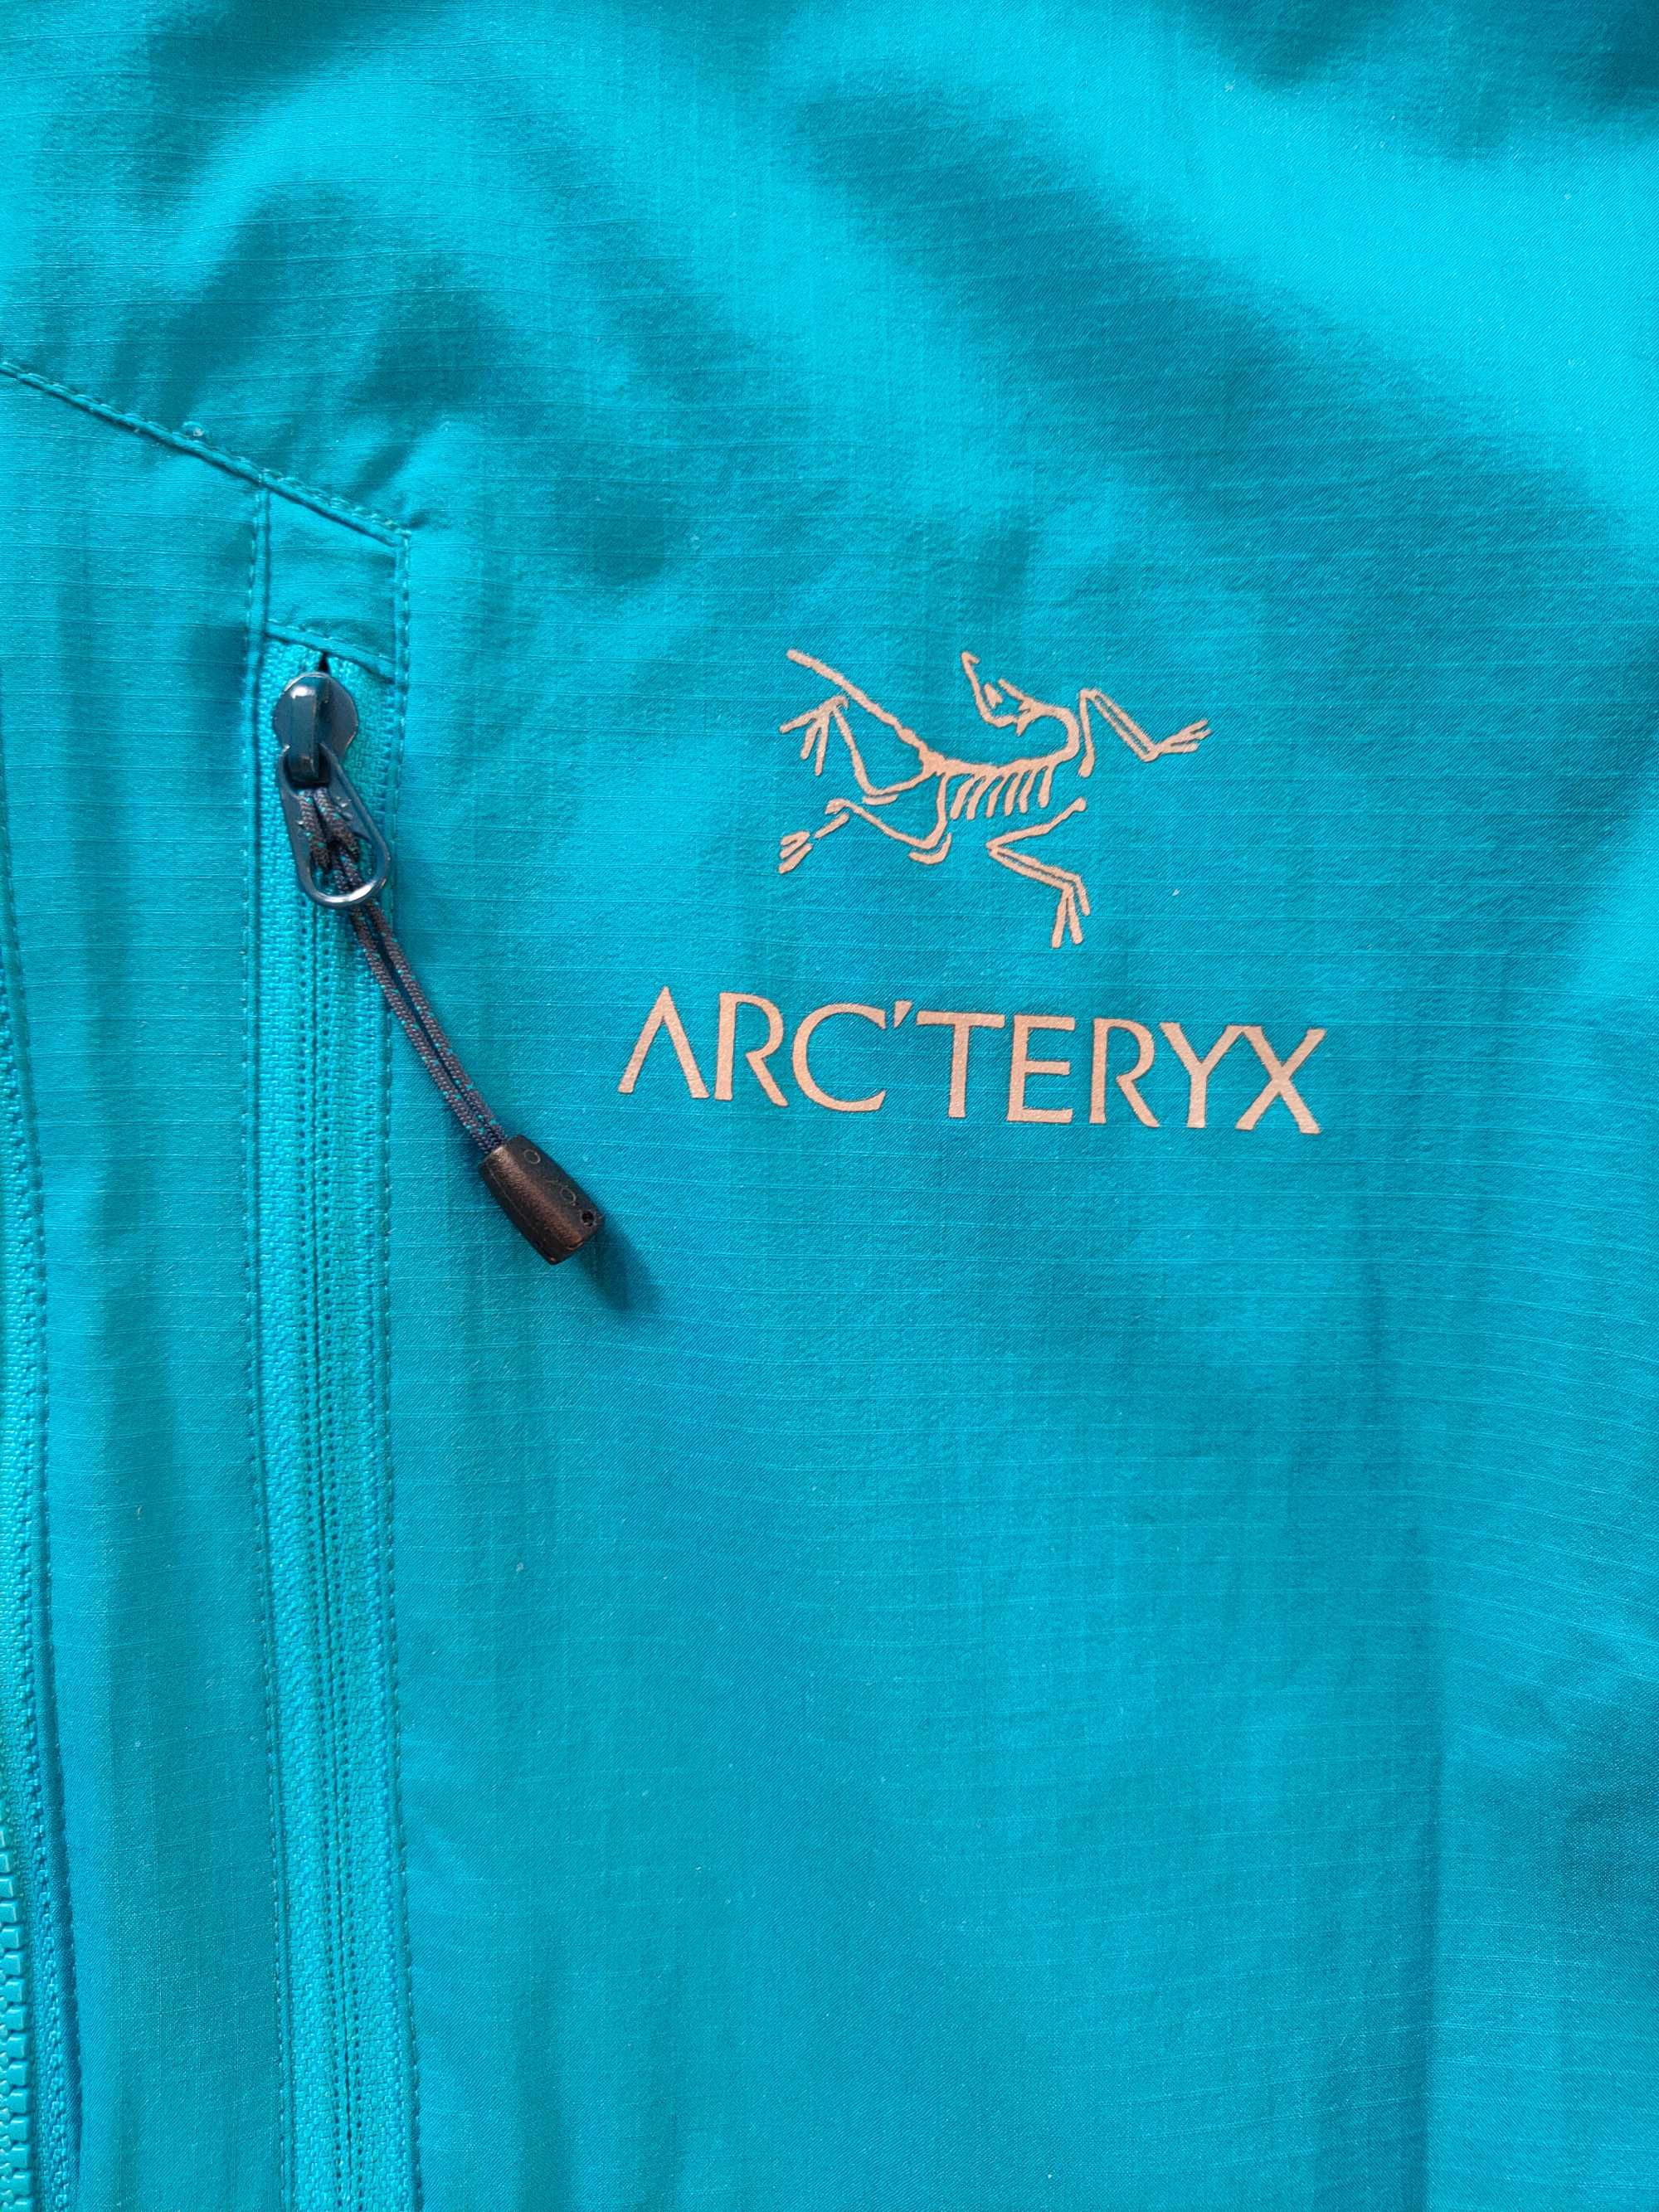 Kurtka Arcteryx Squamish Hoody Arc'teryx rozmiar S ORYGINALNA